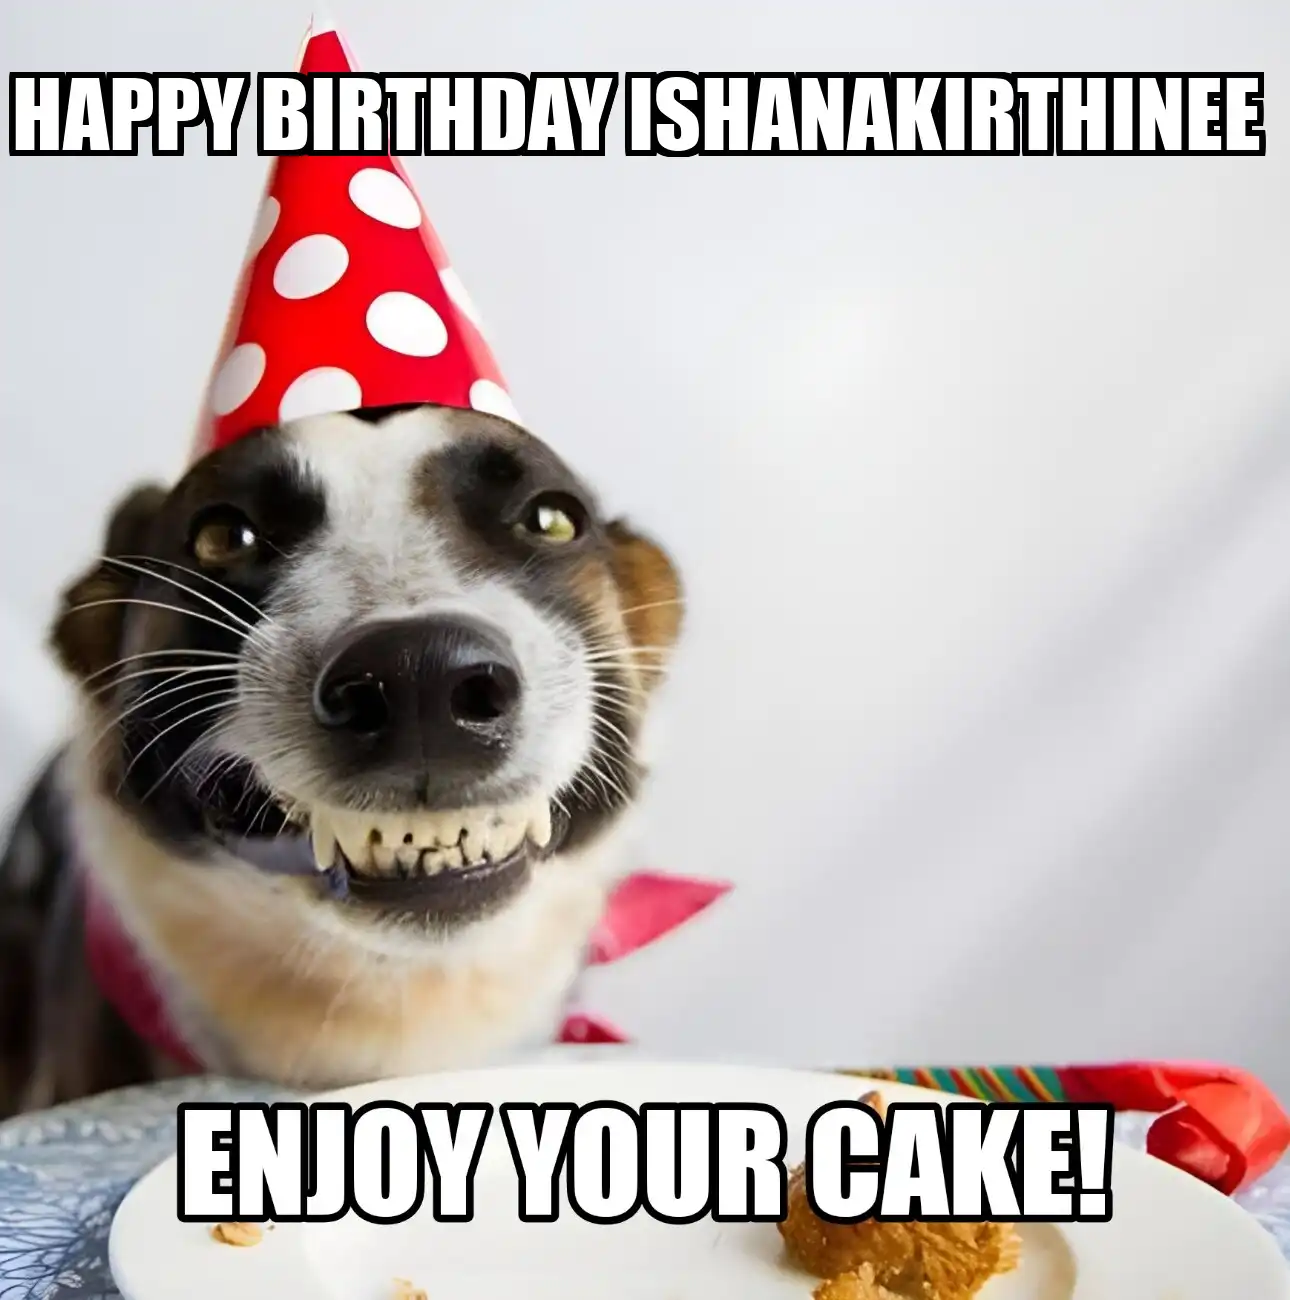 Happy Birthday Ishanakirthinee Enjoy Your Cake Dog Meme